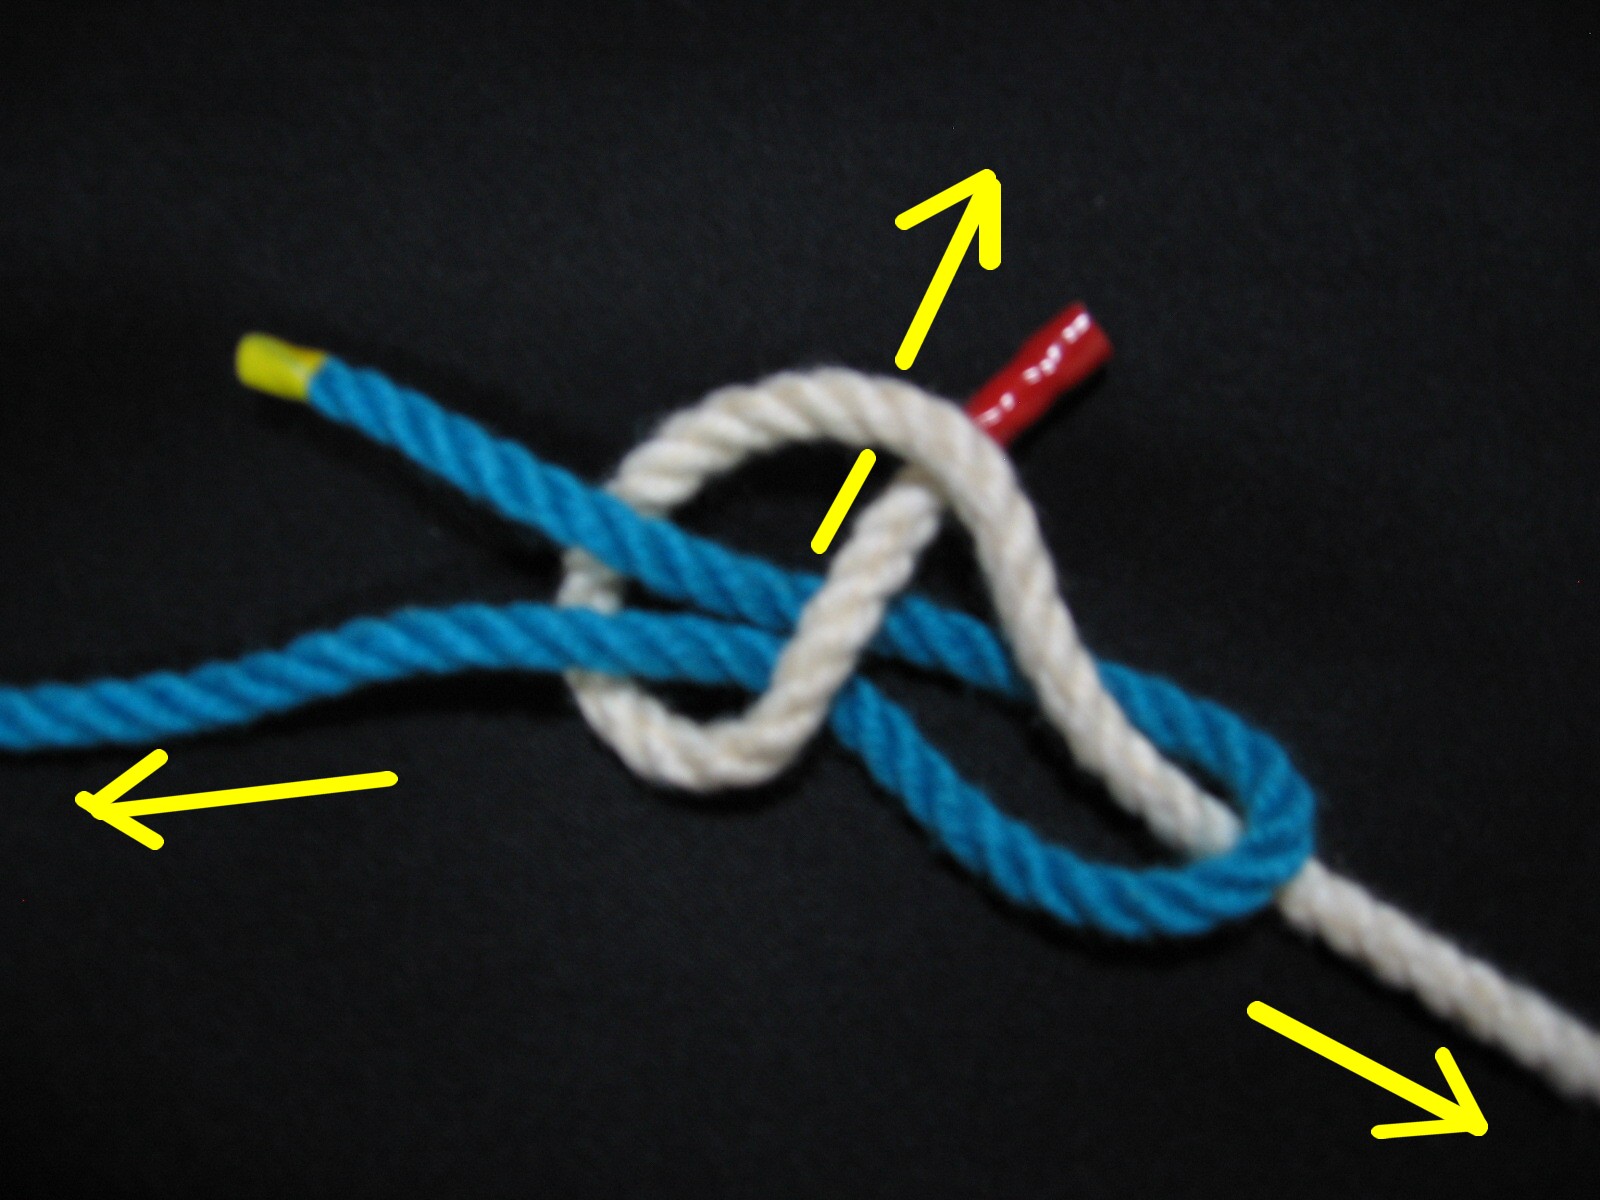 一重継ぎ シート ベンド ロープワークと釣り糸の結び方百科